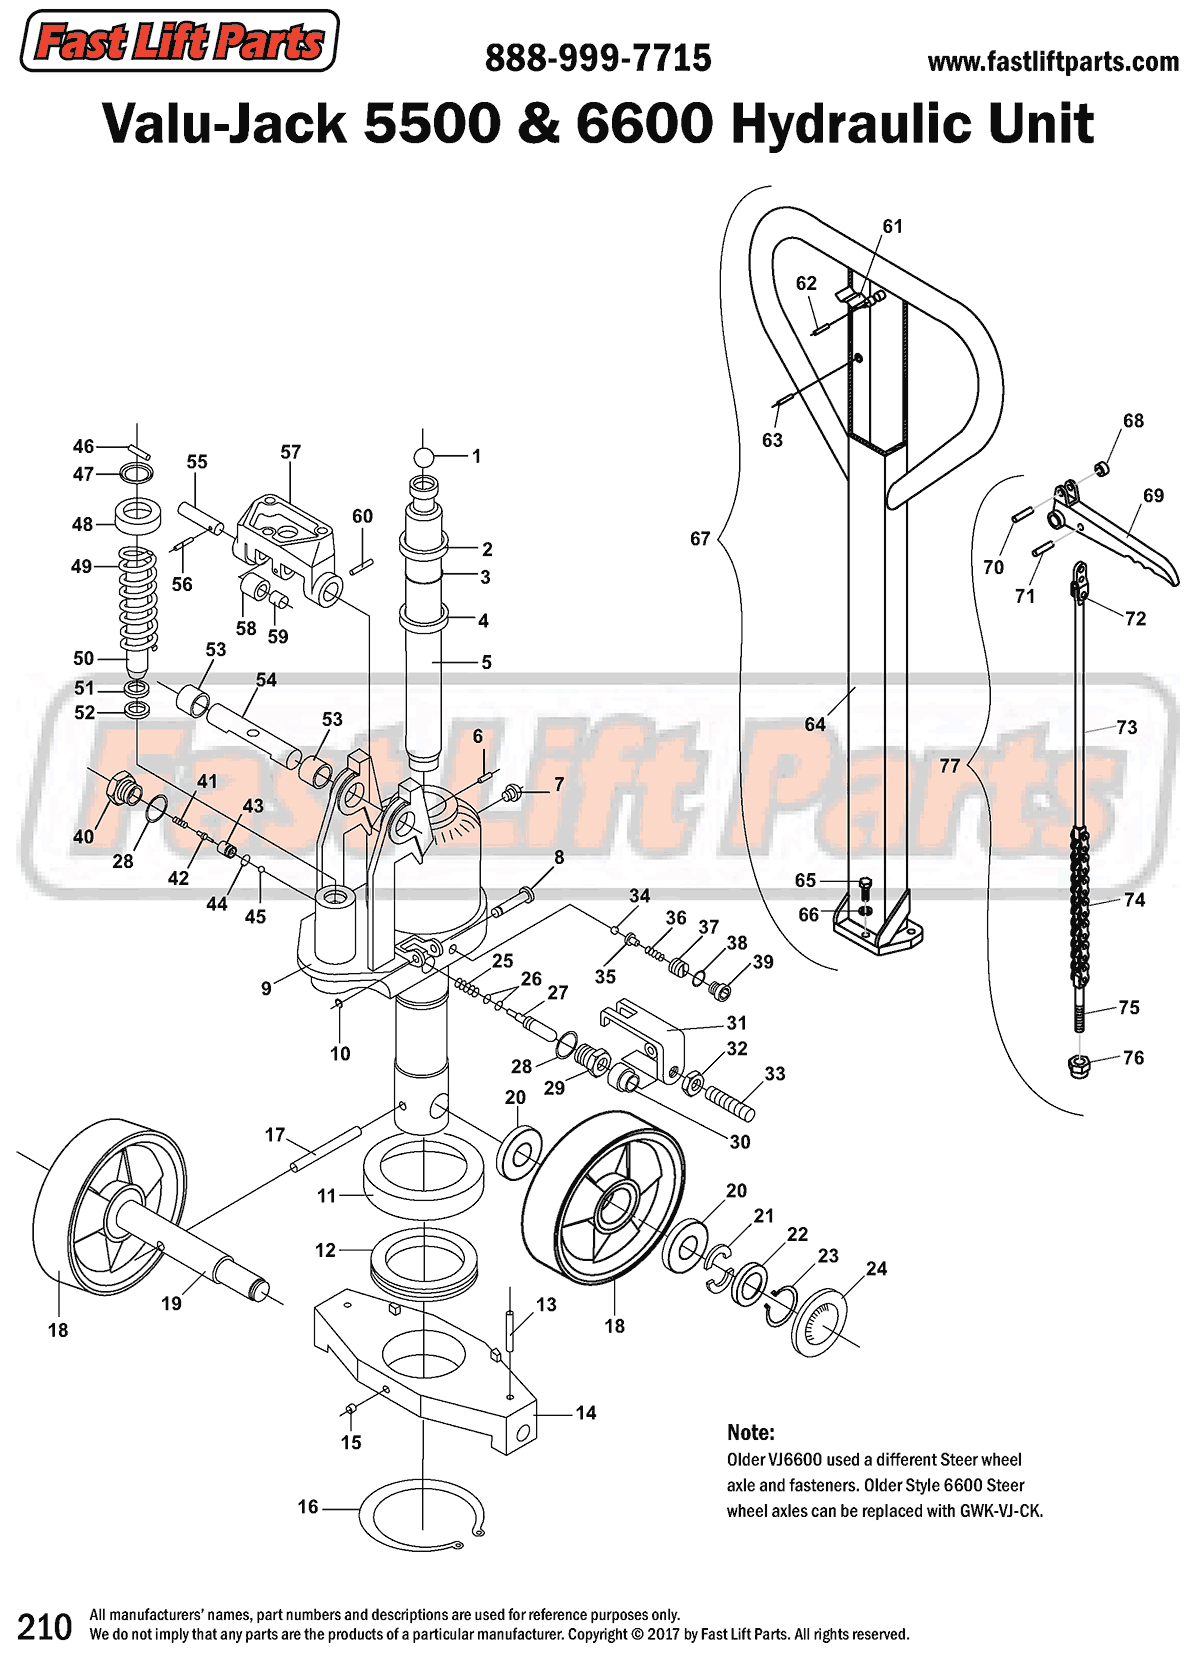 Valu-Jack 5500 & 6600 Hydraulic Unit Line Drawing